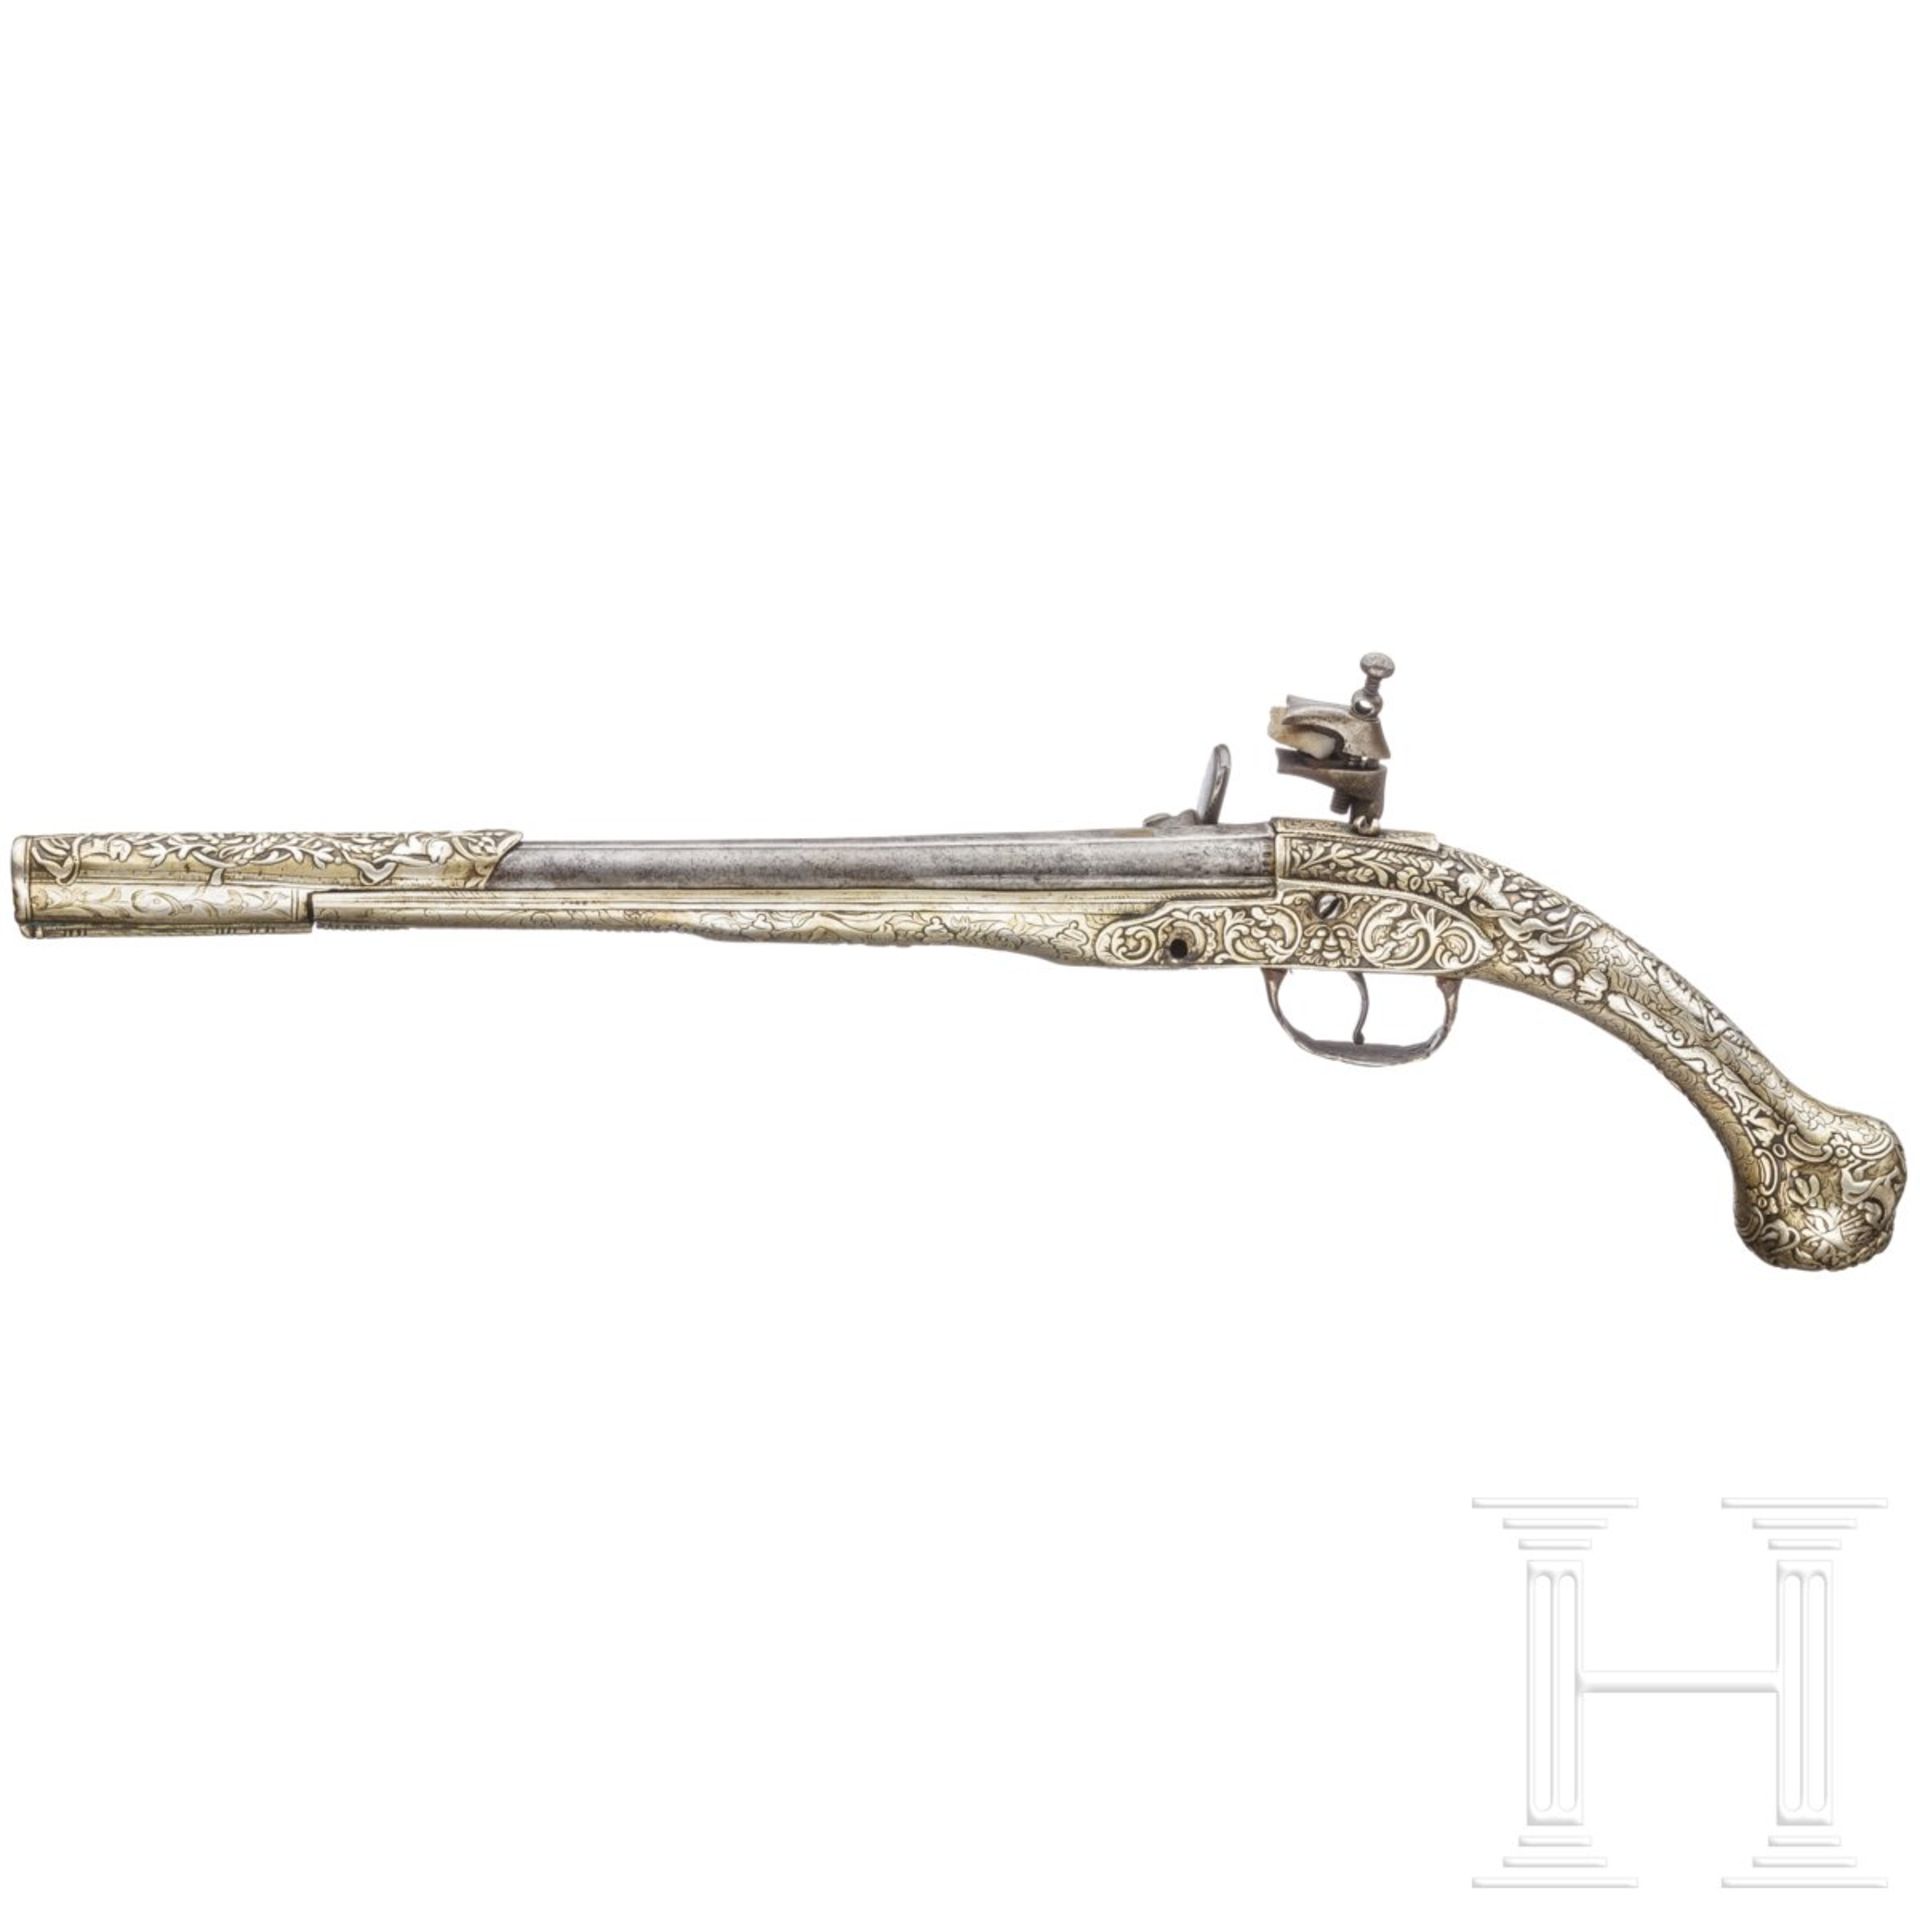 Silbergeschäftete Miquelet-Pistole, balkantürkisch/Albanien, um 1850 - Image 2 of 3